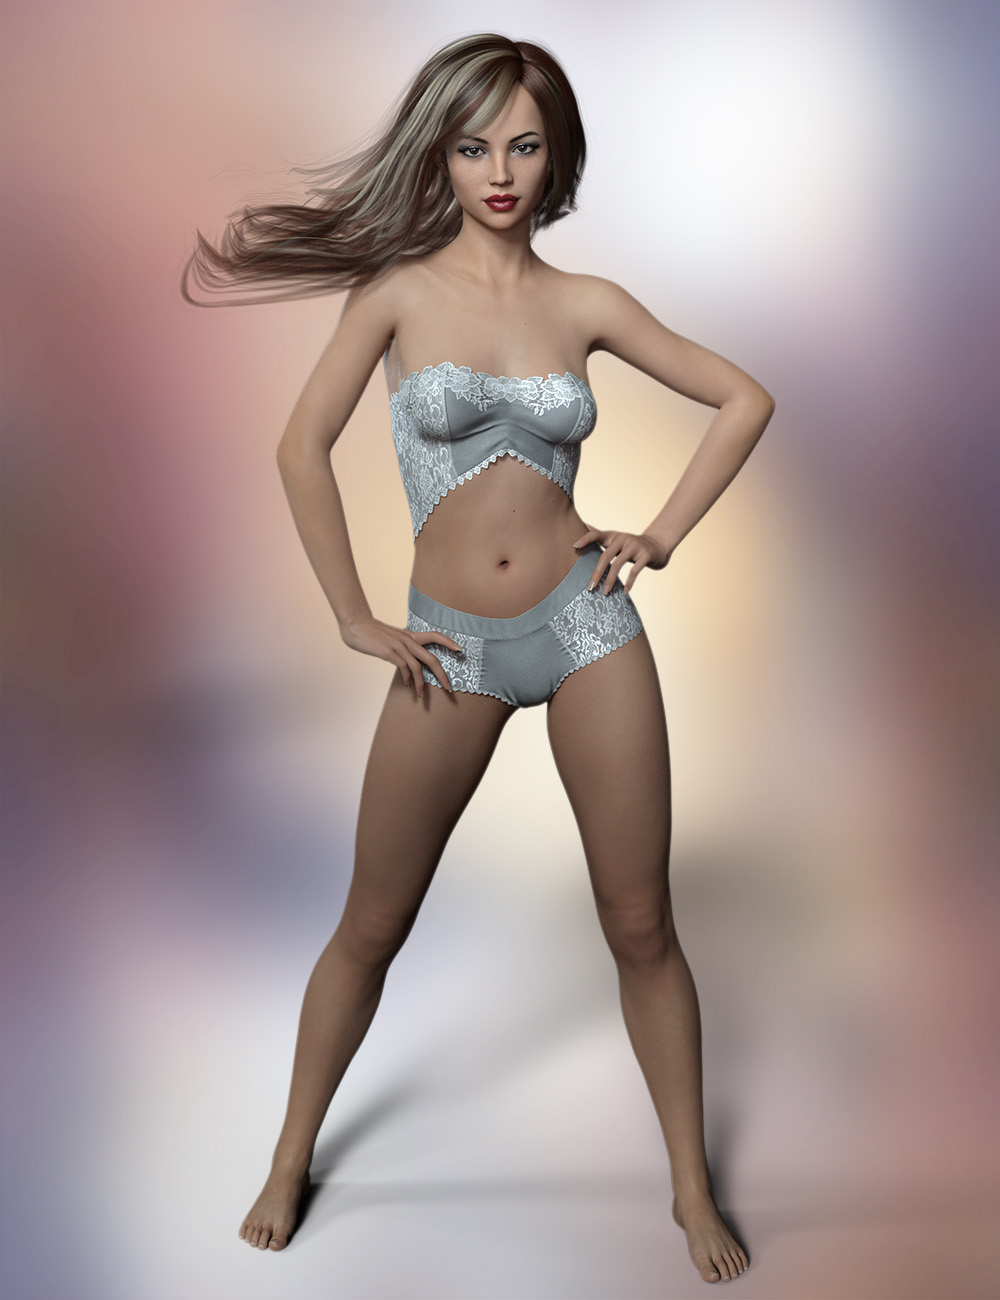 FWSA Katie HD for Charlotte 8 by: Fred Winkler ArtSabby, 3D Models by Daz 3D